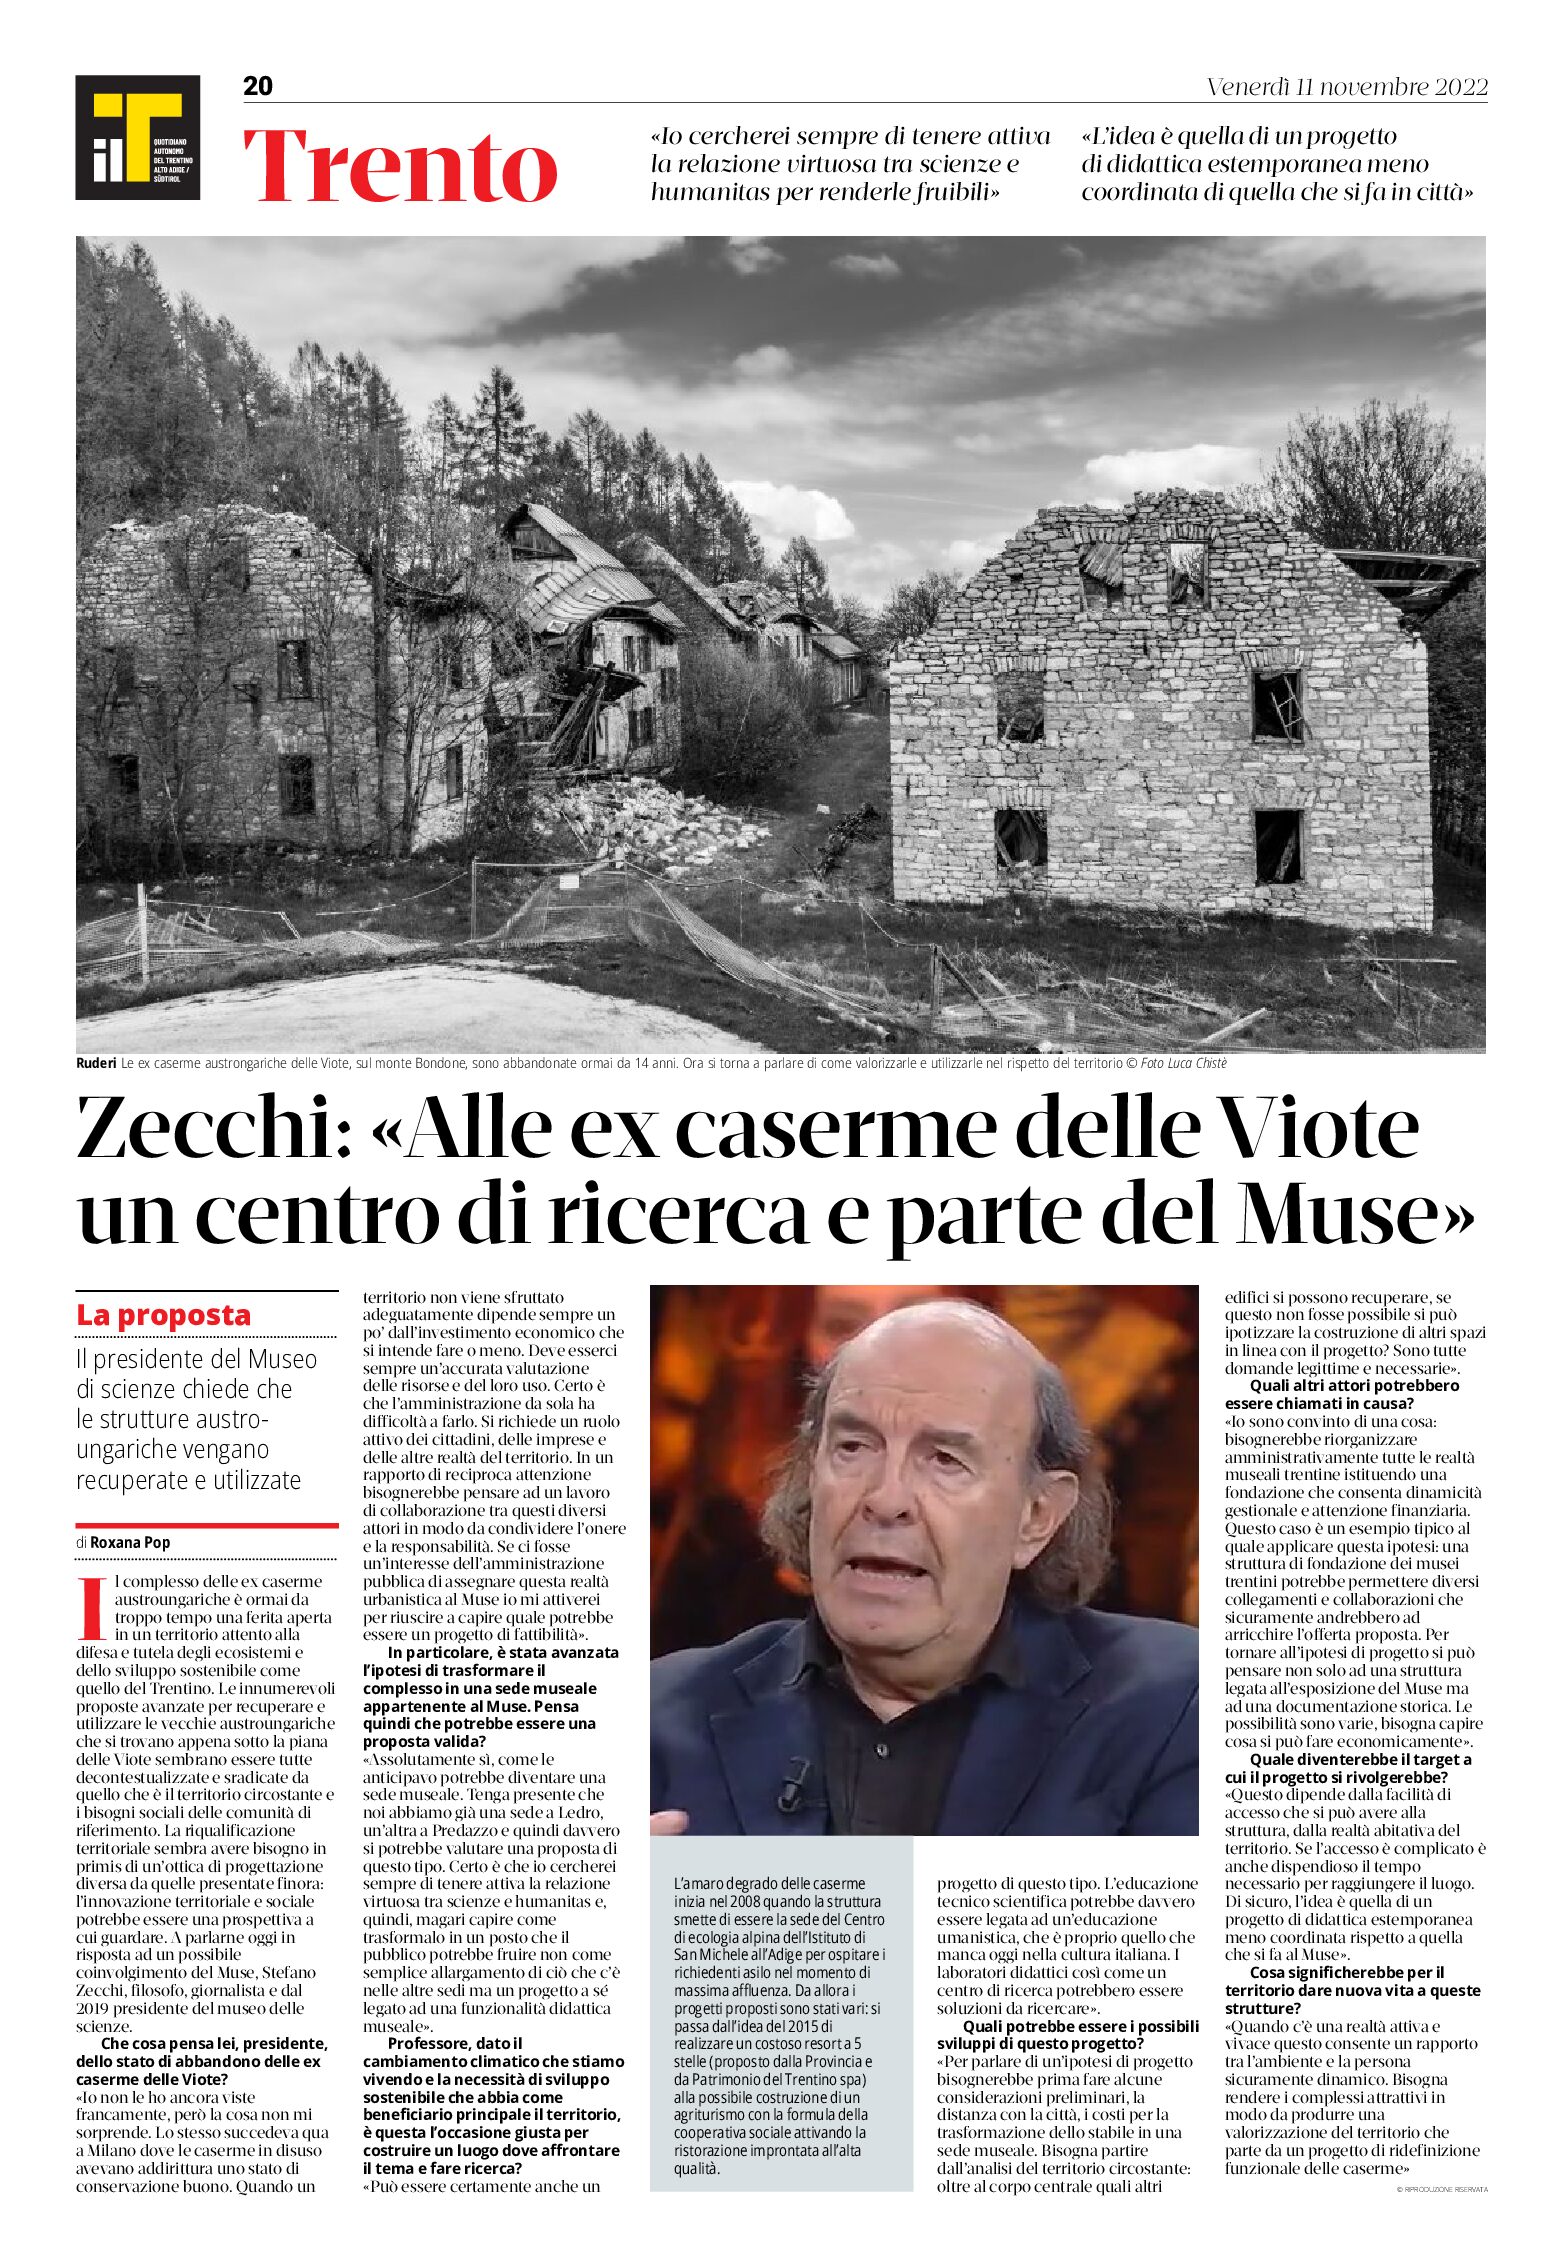 Viote: intervista a Zecchi “alle ex caserme un centro di ricerca e parte del Muse”